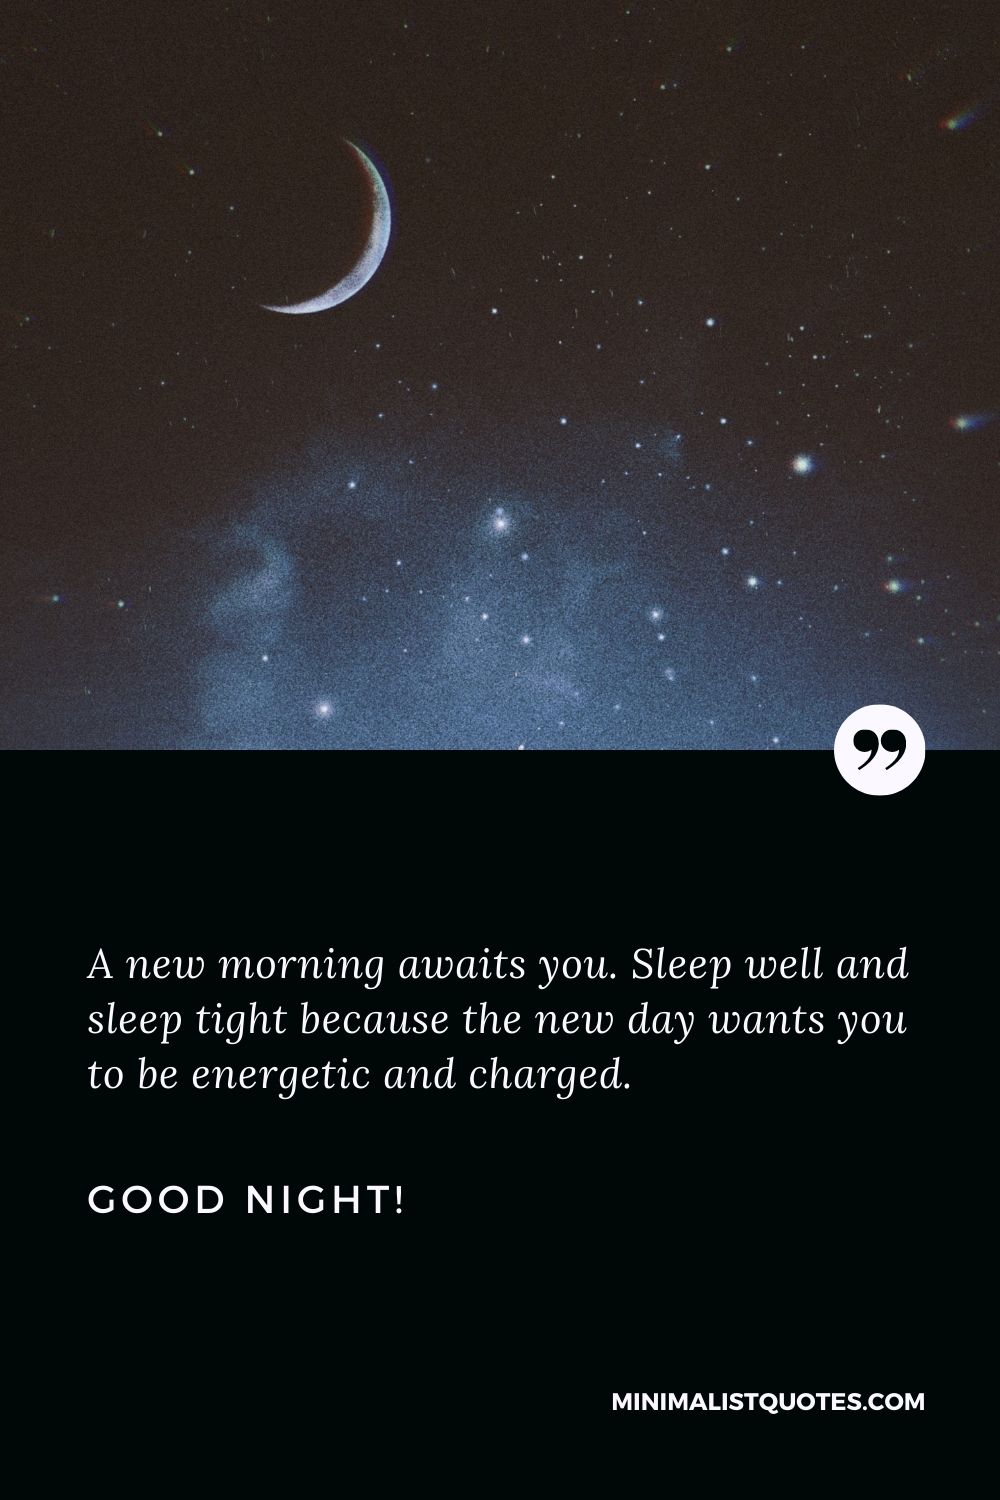 Sleep tight quotes